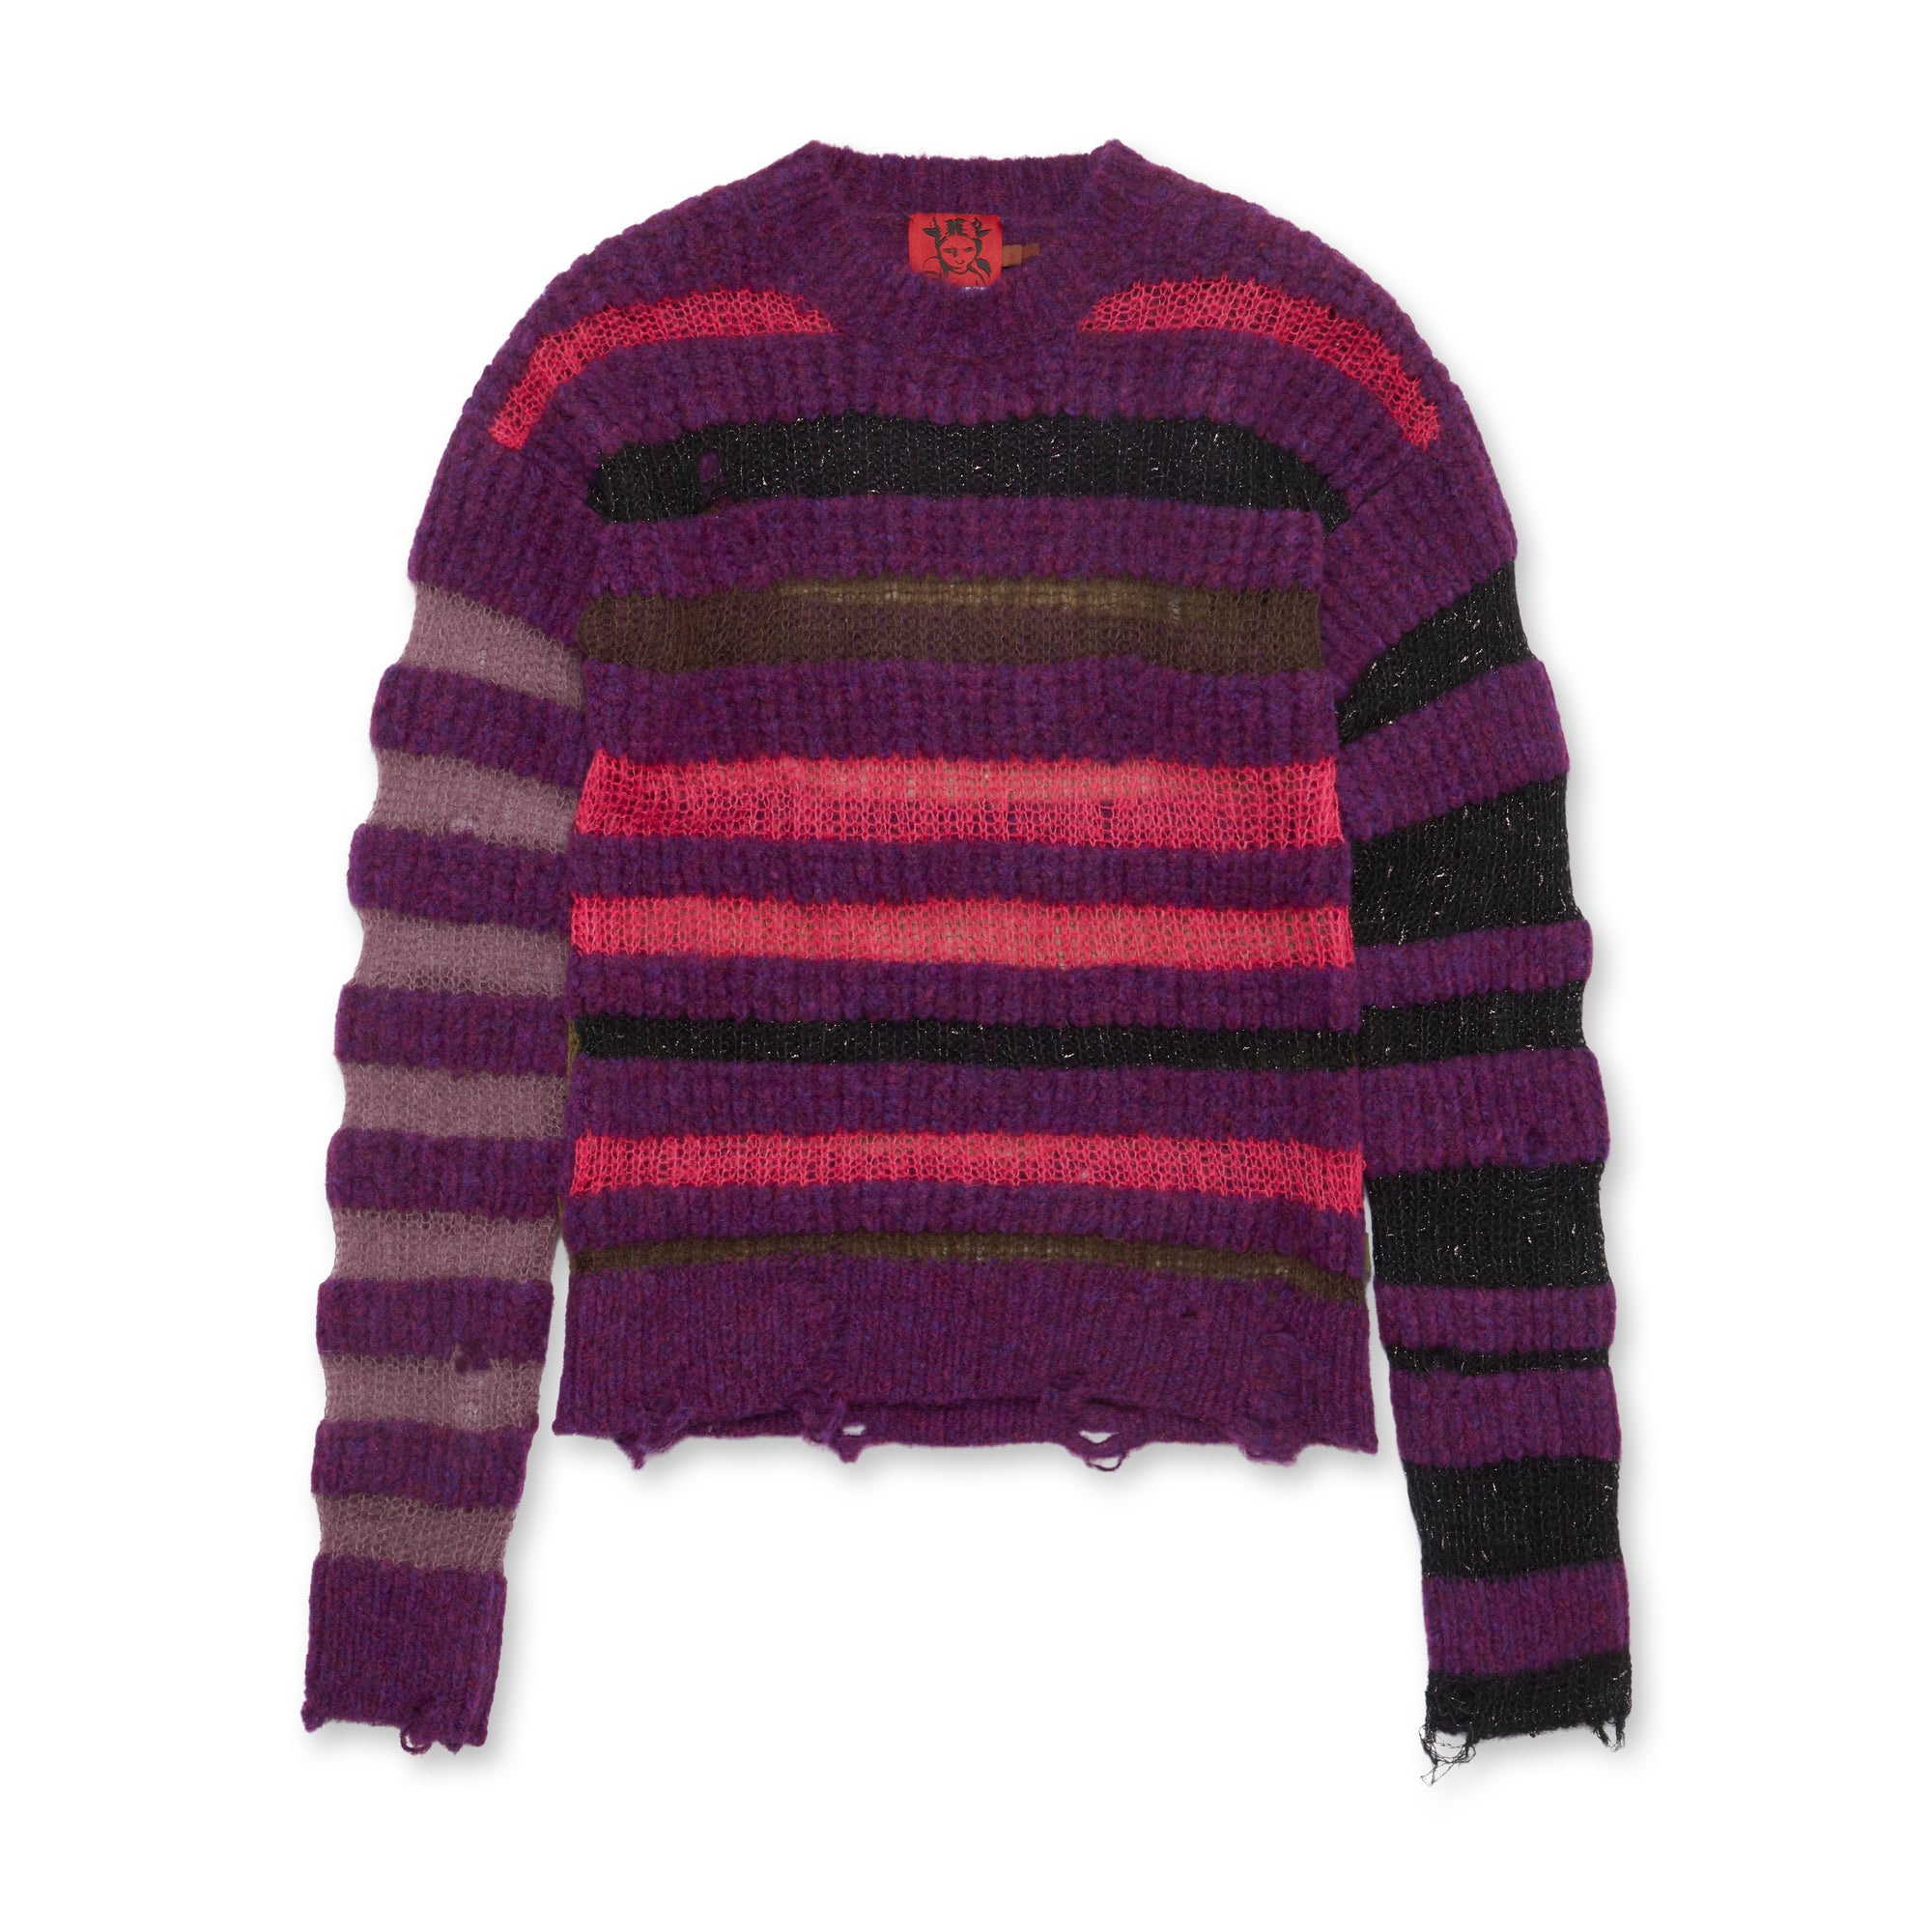 Heaven By Marc Jacobs - Women’s Bumpy Stripe Sweater - (Purple) view 5